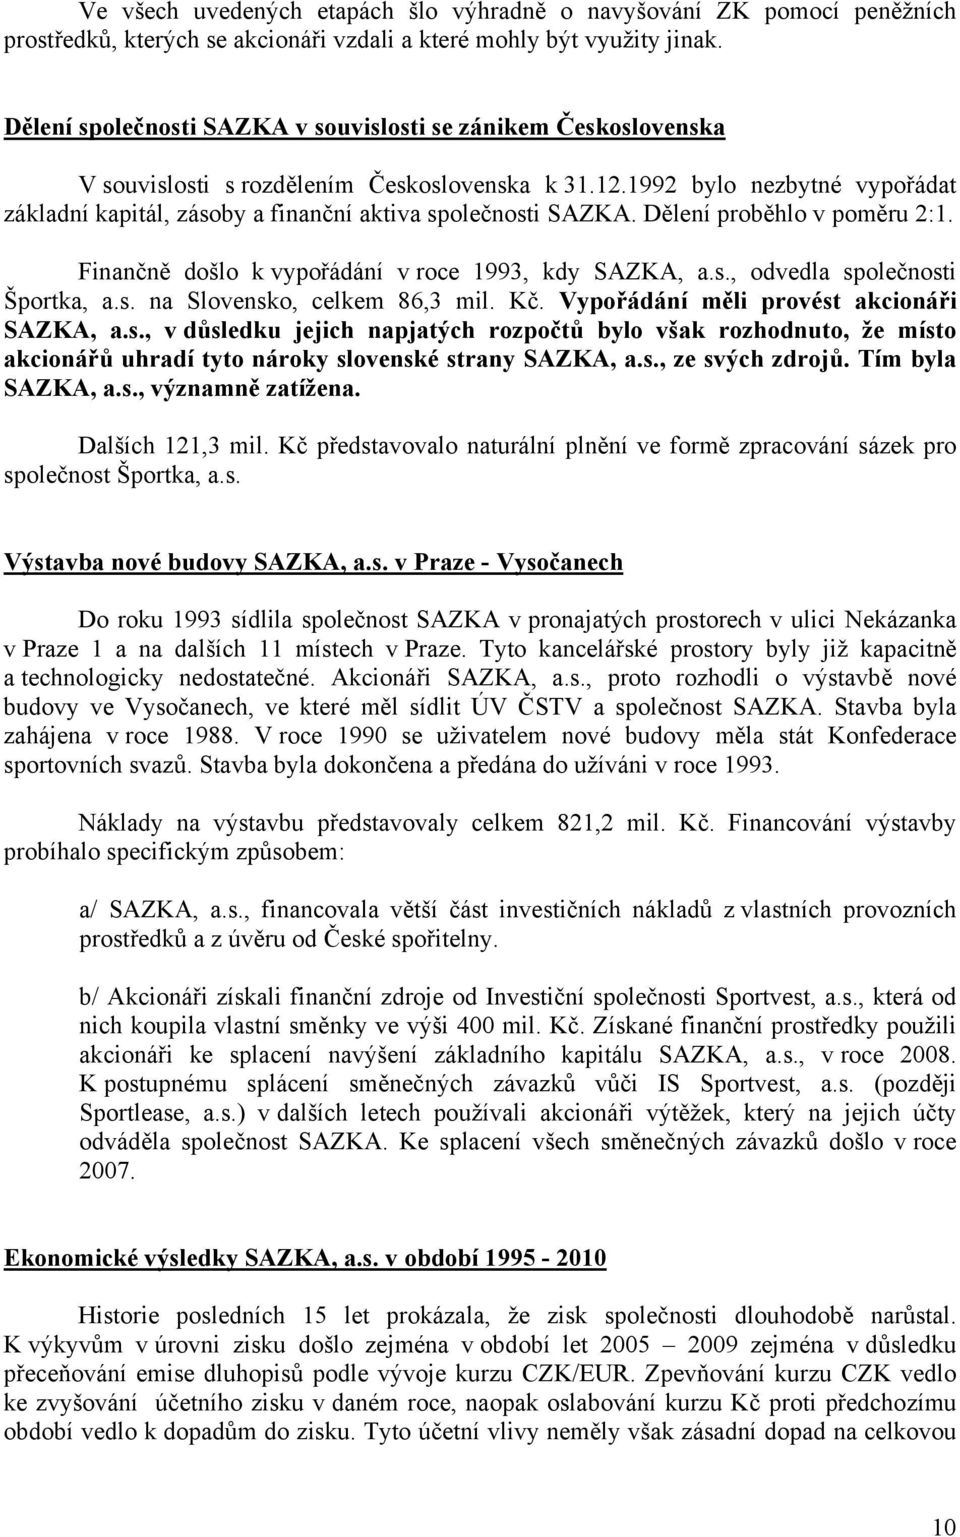 1992 bylo nezbytné vypořádat základní kapitál, zásoby a finanční aktiva společnosti SAZKA. Dělení proběhlo v poměru 2:1. Finančně došlo k vypořádání v roce 1993, kdy SAZKA, a.s., odvedla společnosti Športka, a.